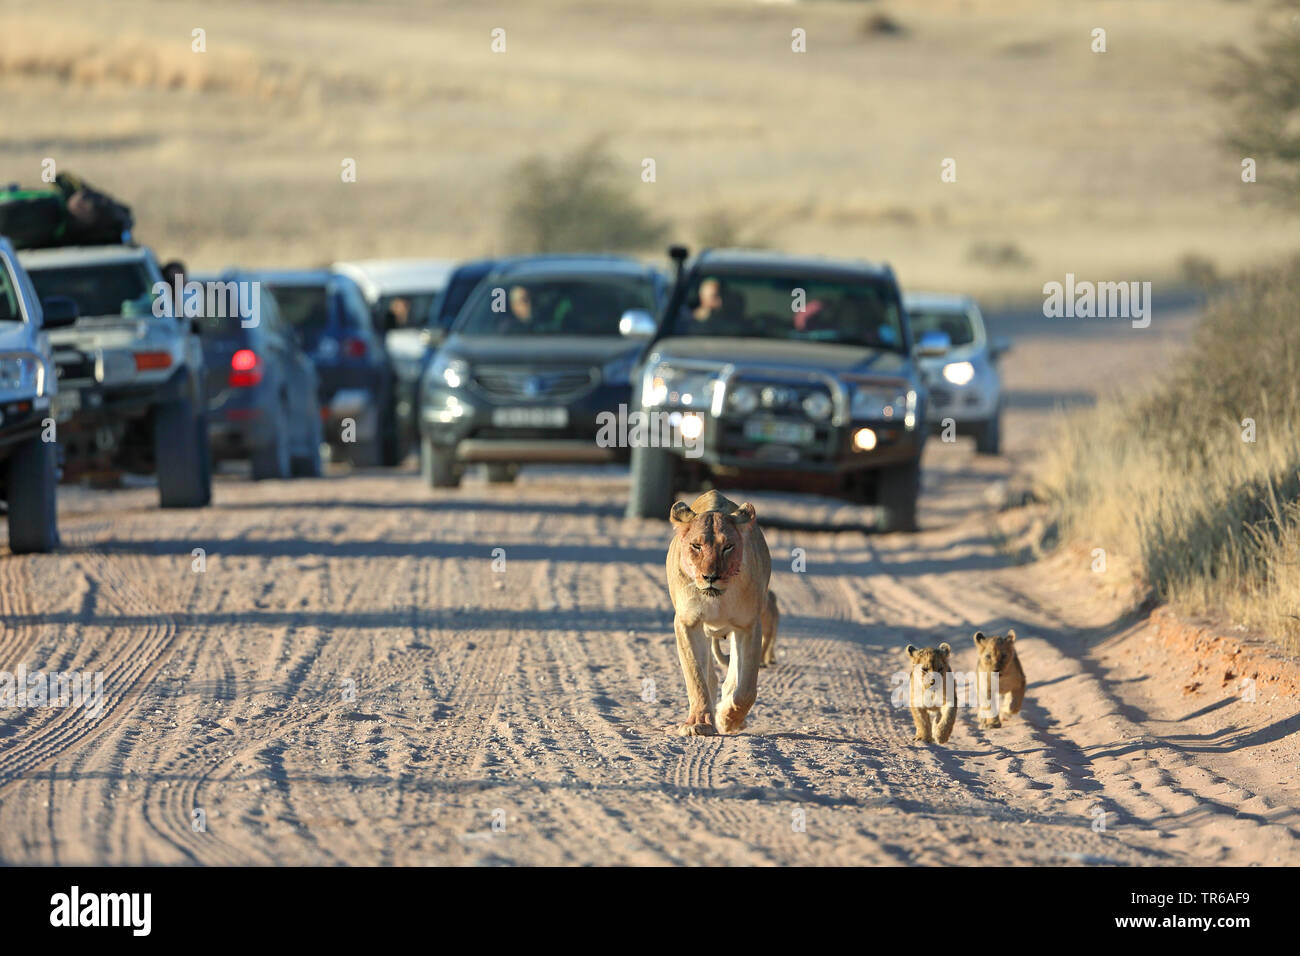 Lion (Panthera leo), lionne marchant avec deux jeunes animaux en face de voitures sur une piste de sable, vue avant, Afrique du Sud, Kgalagadi Transfrontier National Park Banque D'Images